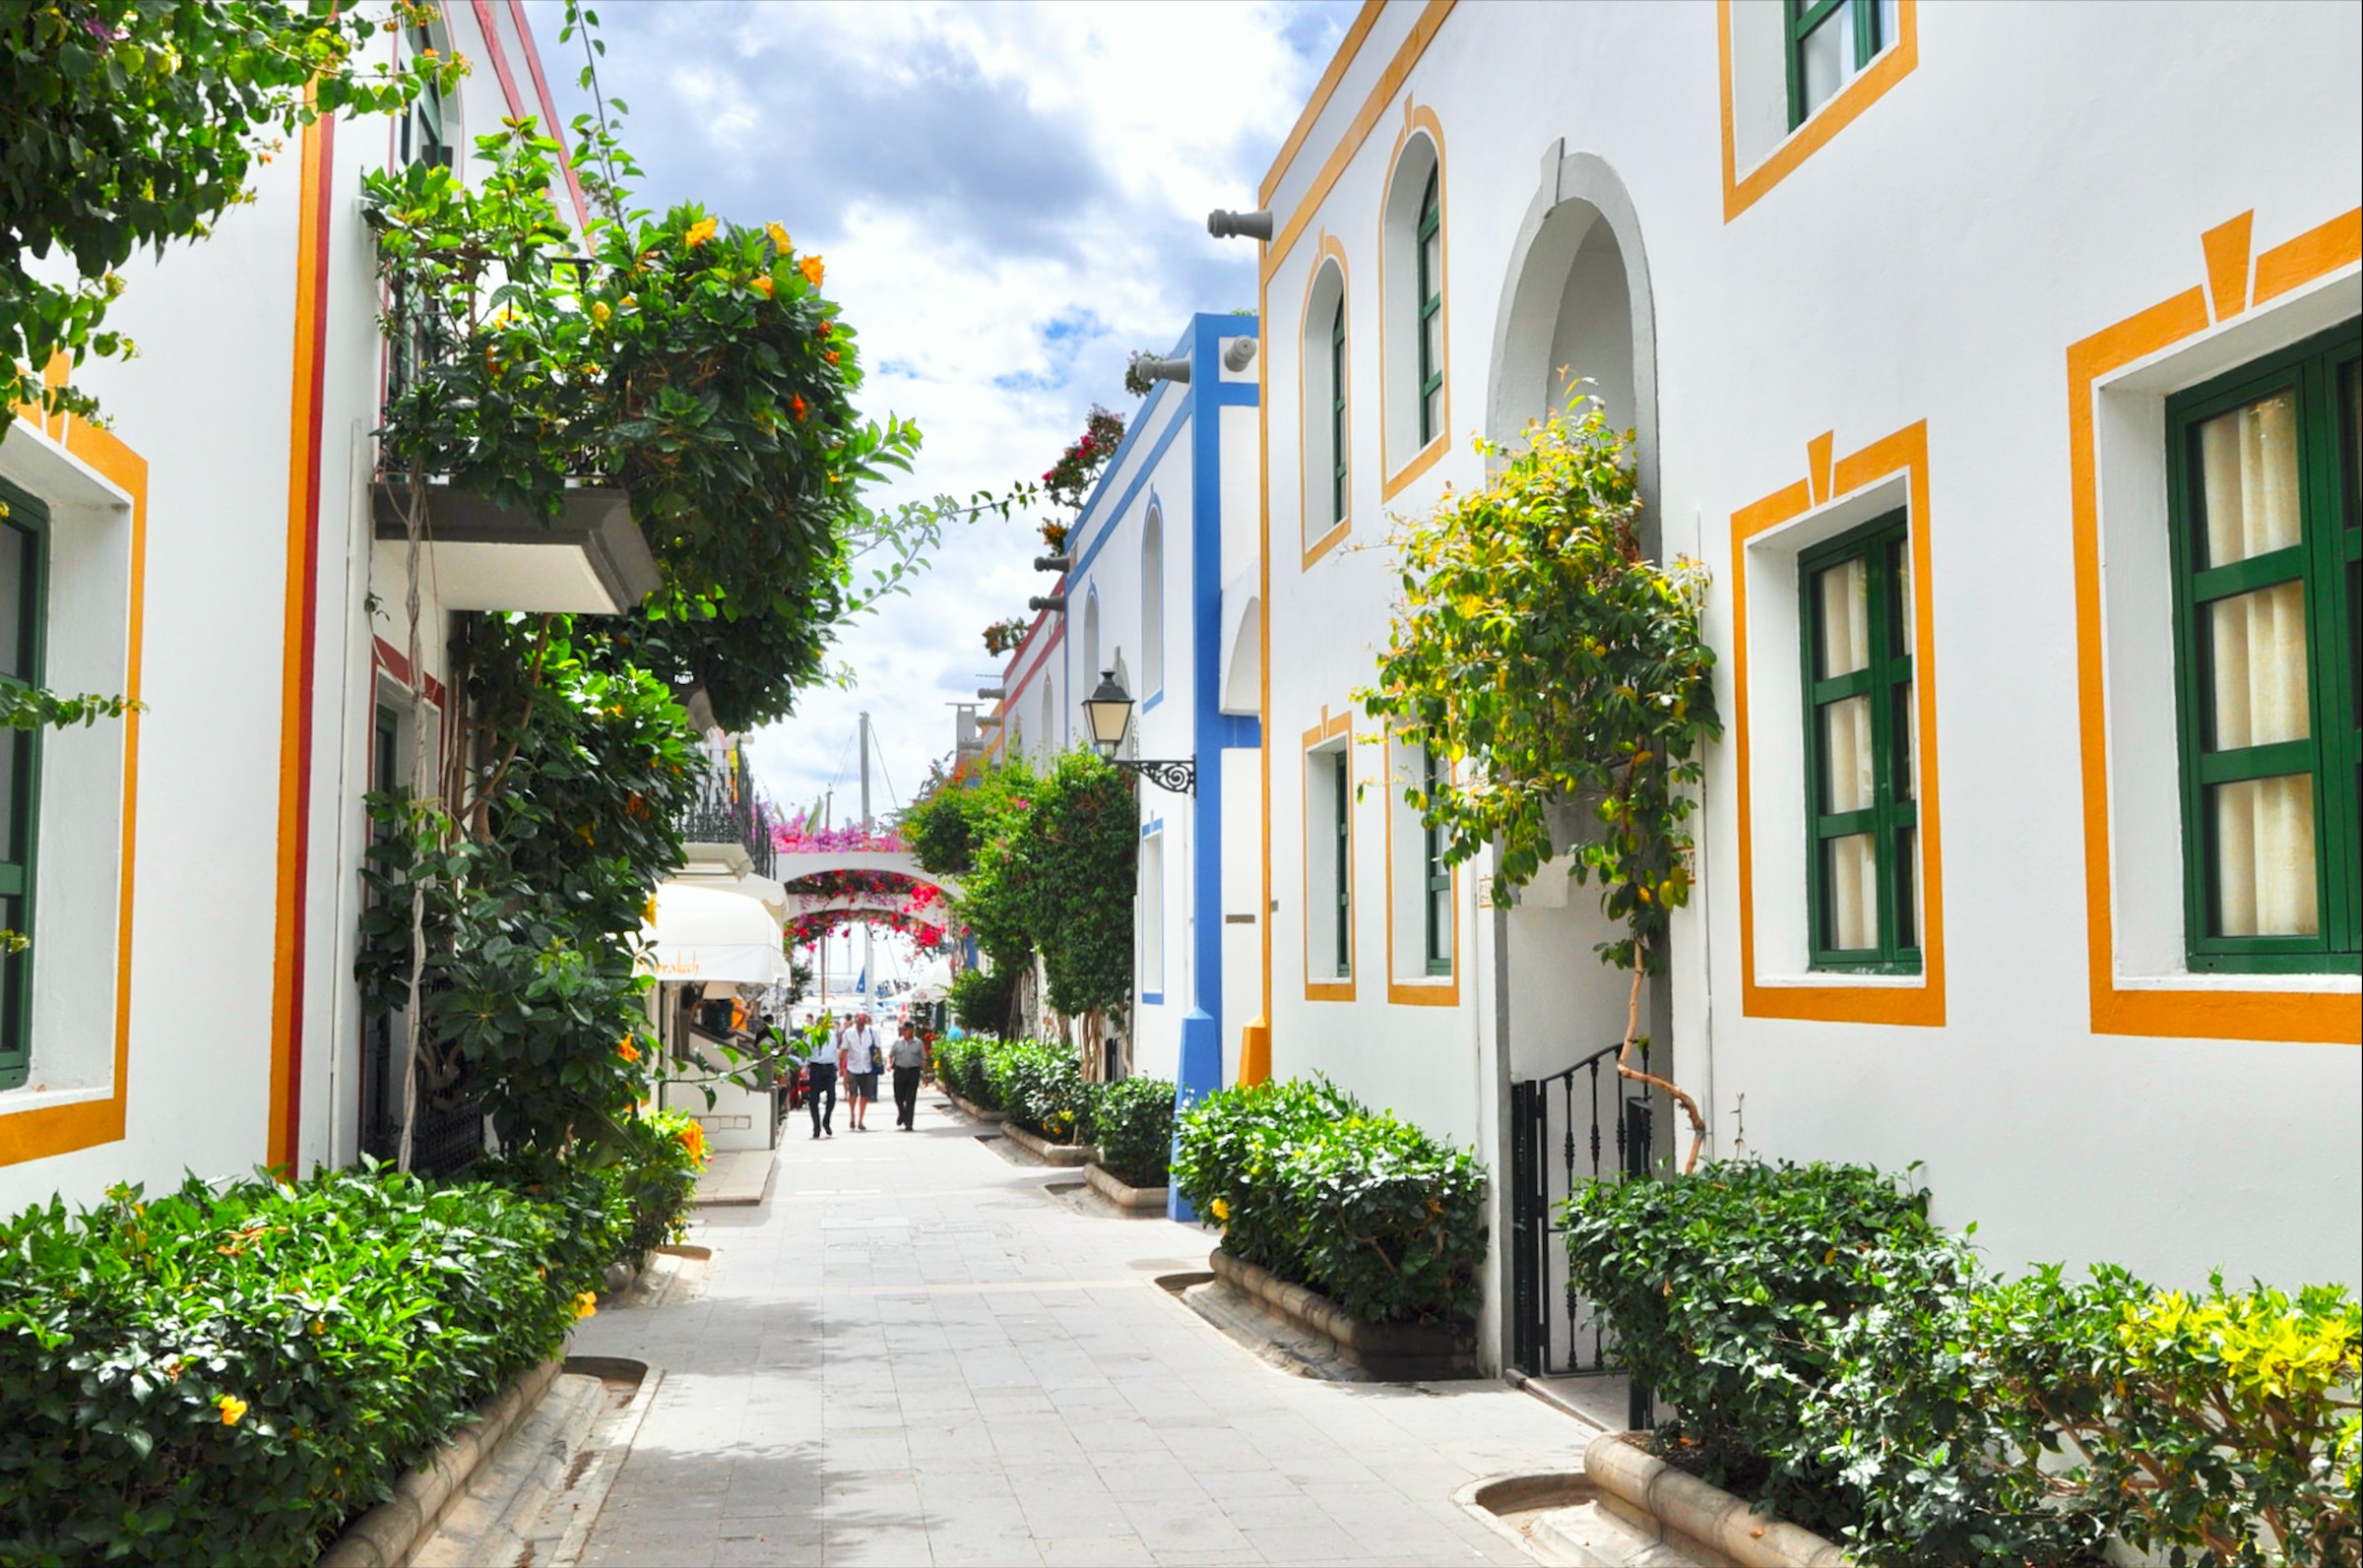 Charmig smal gata med traditionella vita hus och färgglada accenter, gröna fönsterluckor, och blommande växter i Marbella, Spanien.